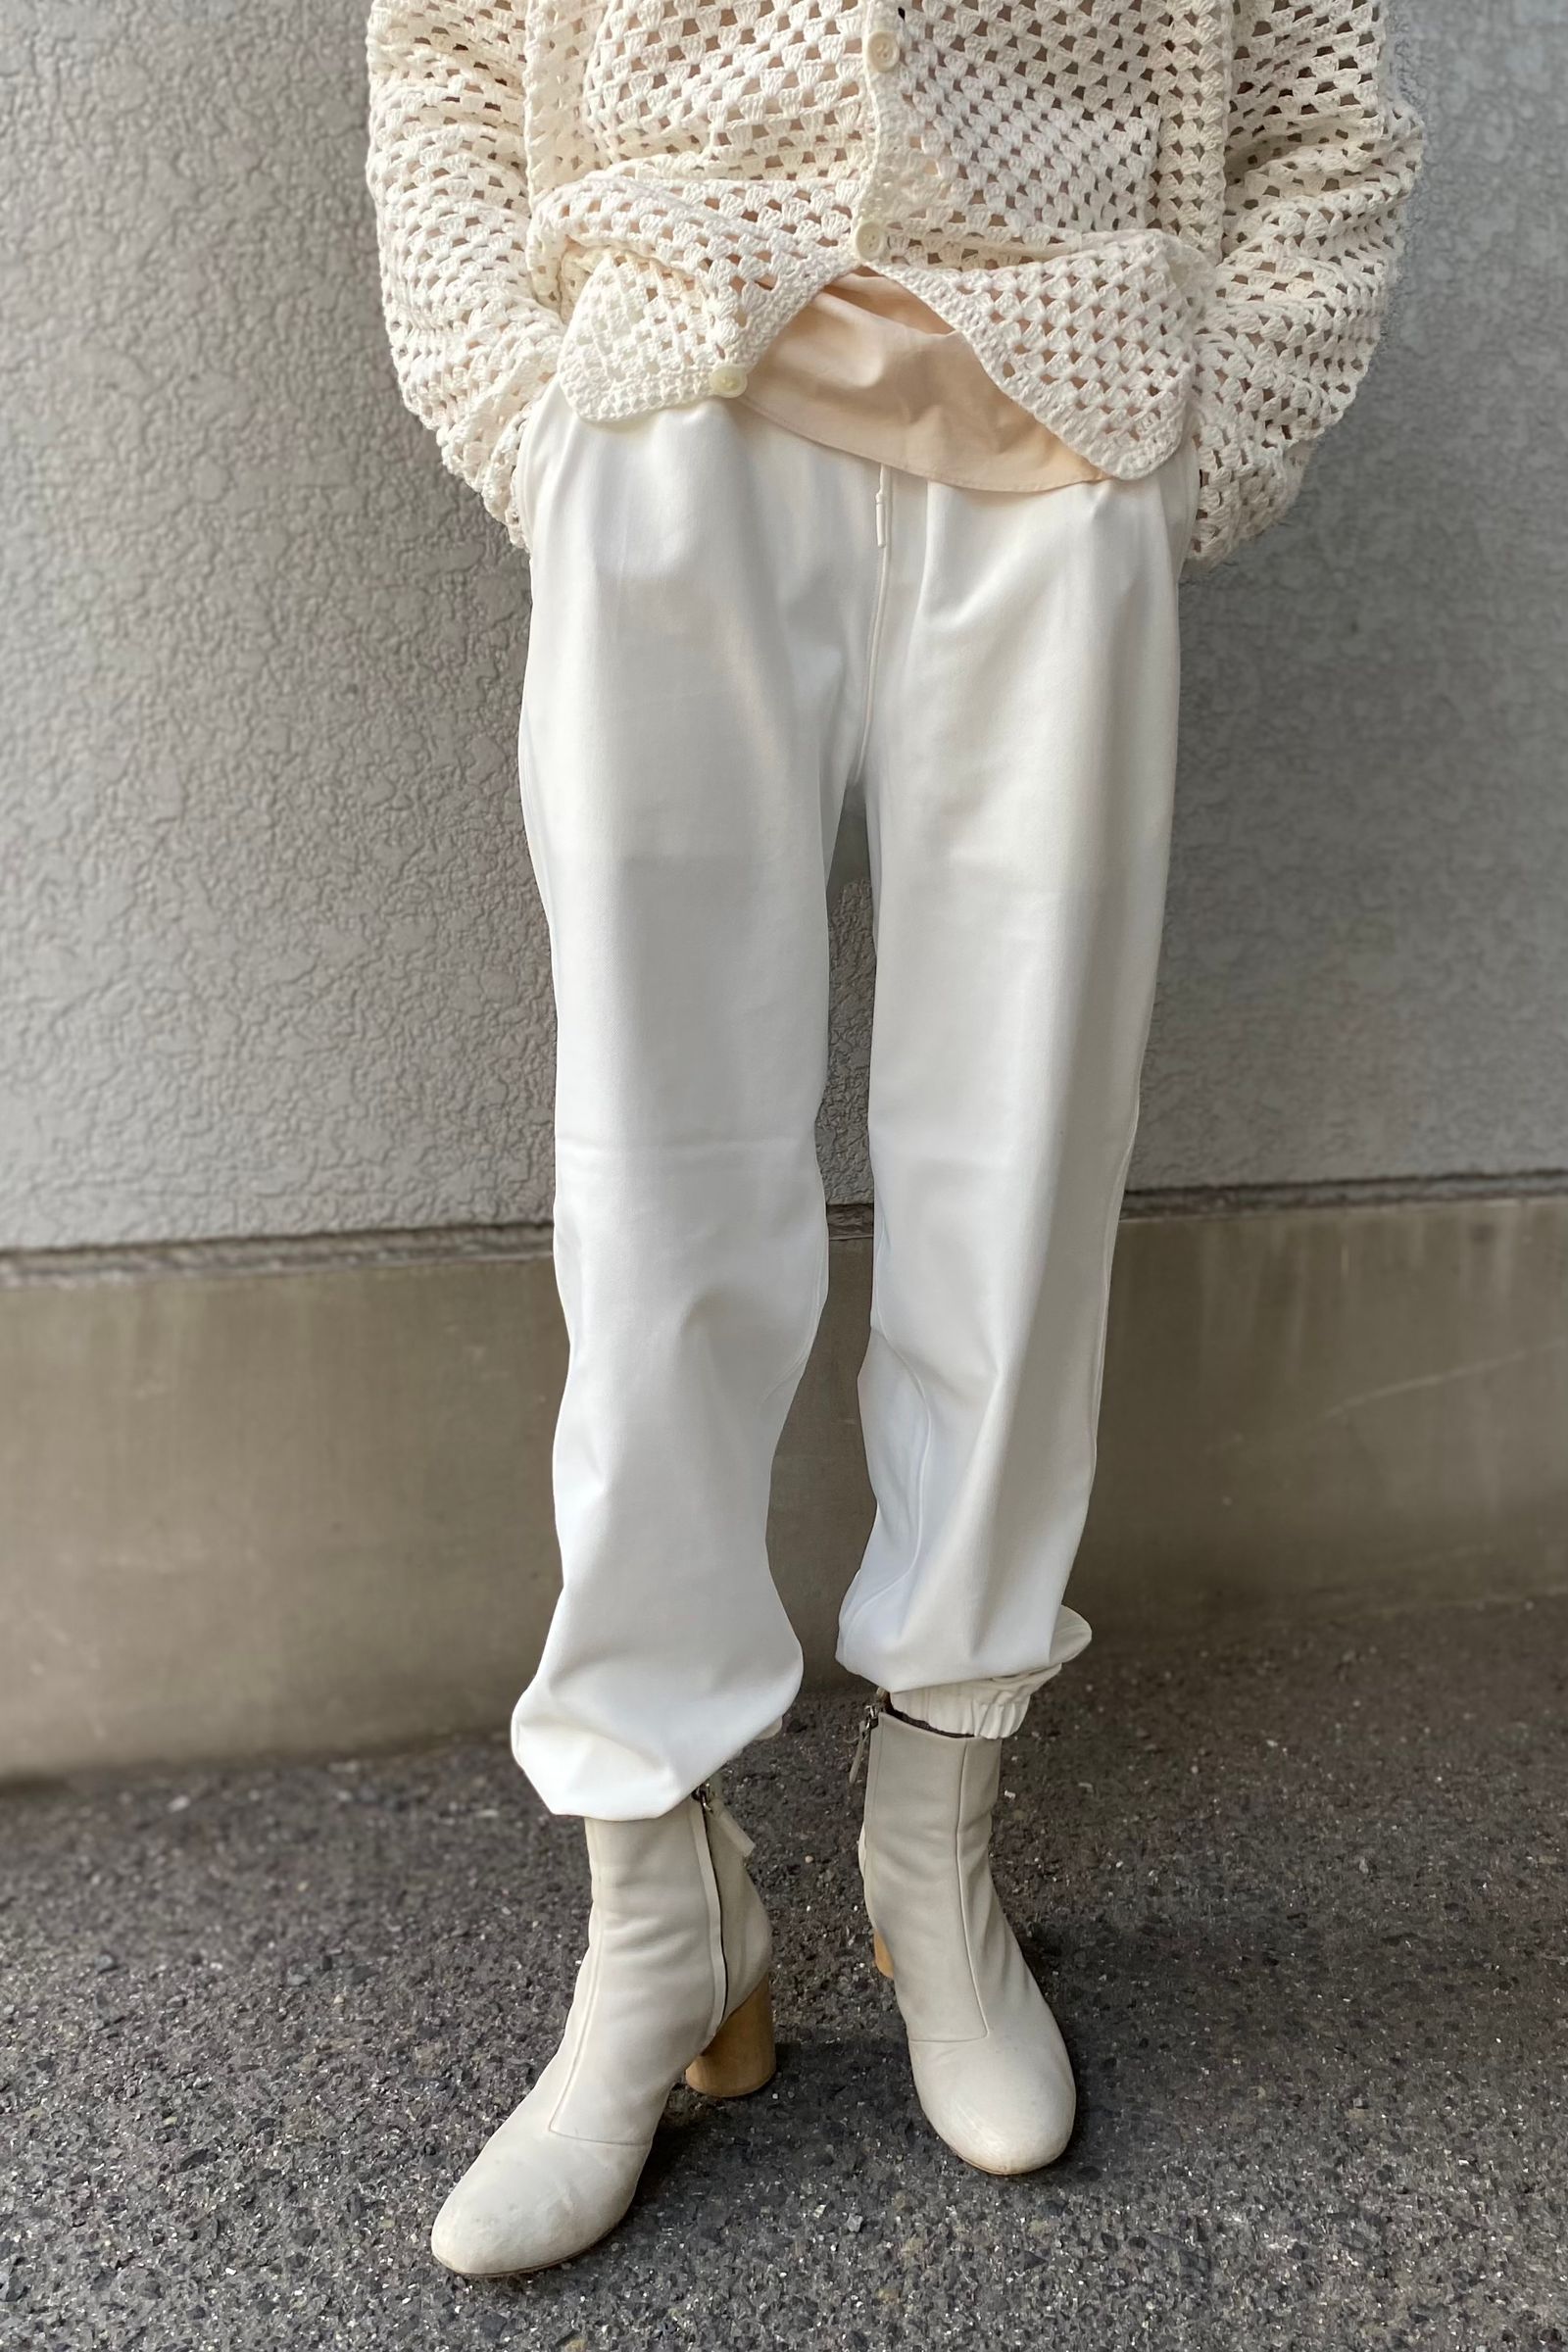 DAIWA PIER39 - w's tech flex jersey pants -white- 23ss women